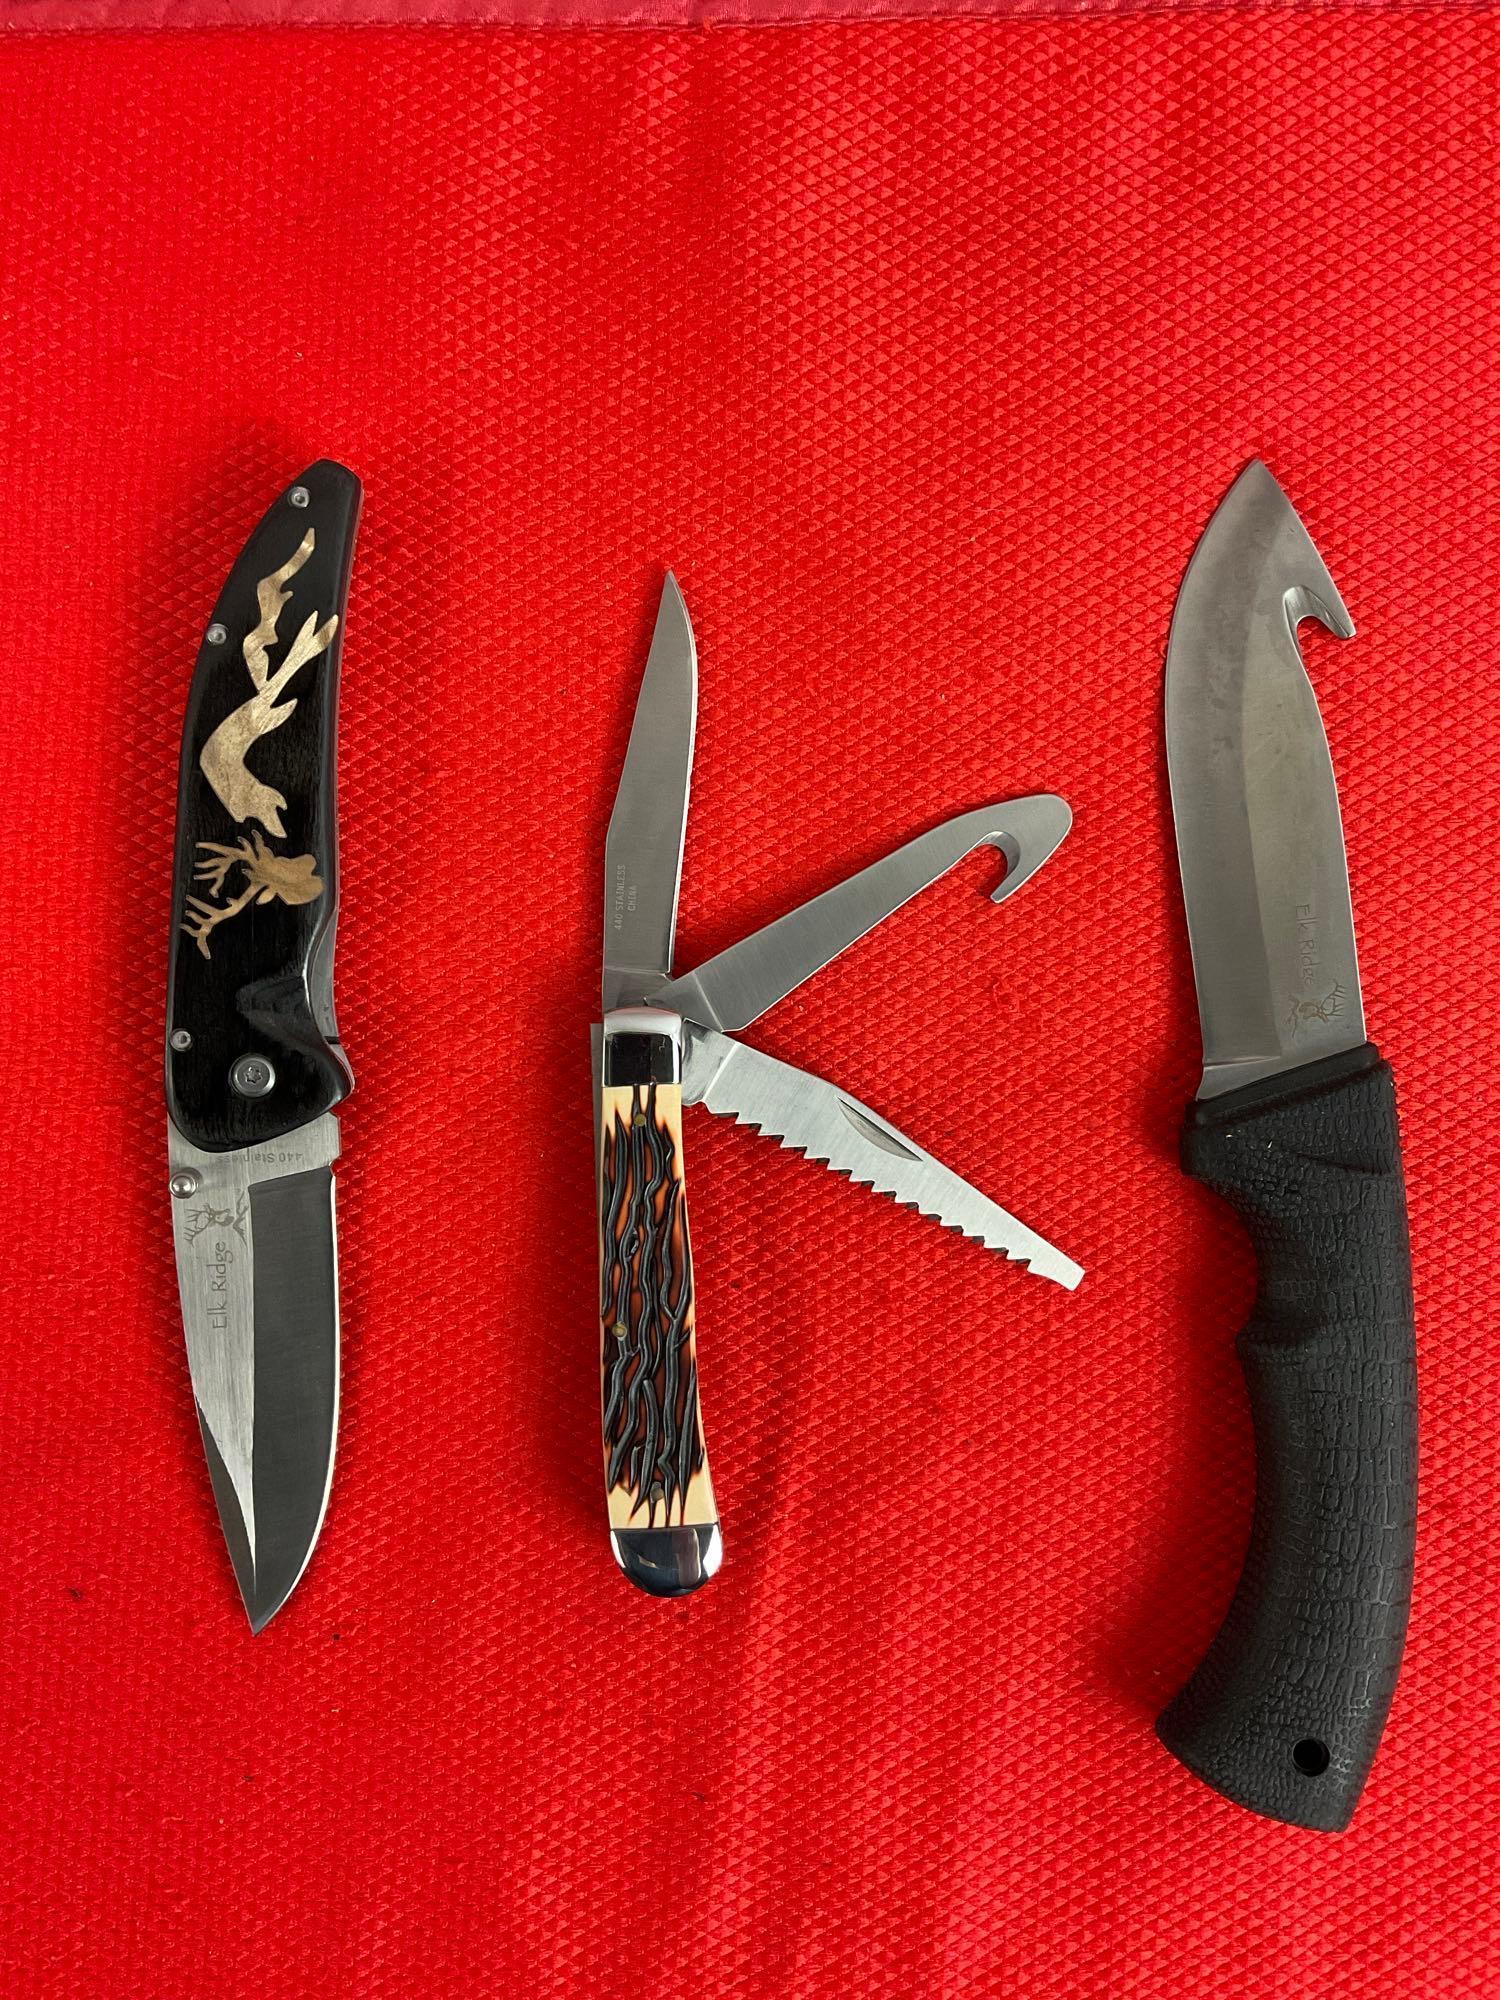 3 pcs Elk Ridge 440 Steel Knife Assortment Models 80D, 99 & 891. NIB. See pics